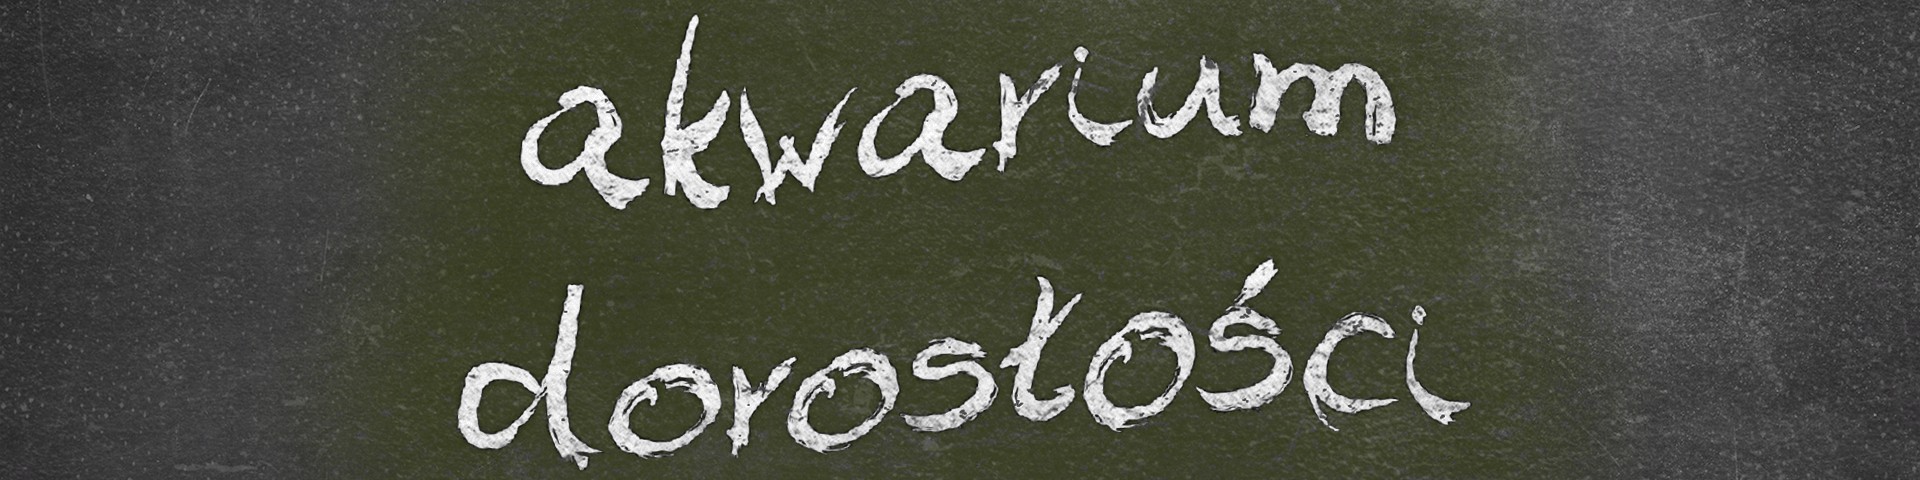 Horyzonty polskiej edukacji — akwarium dorosłości